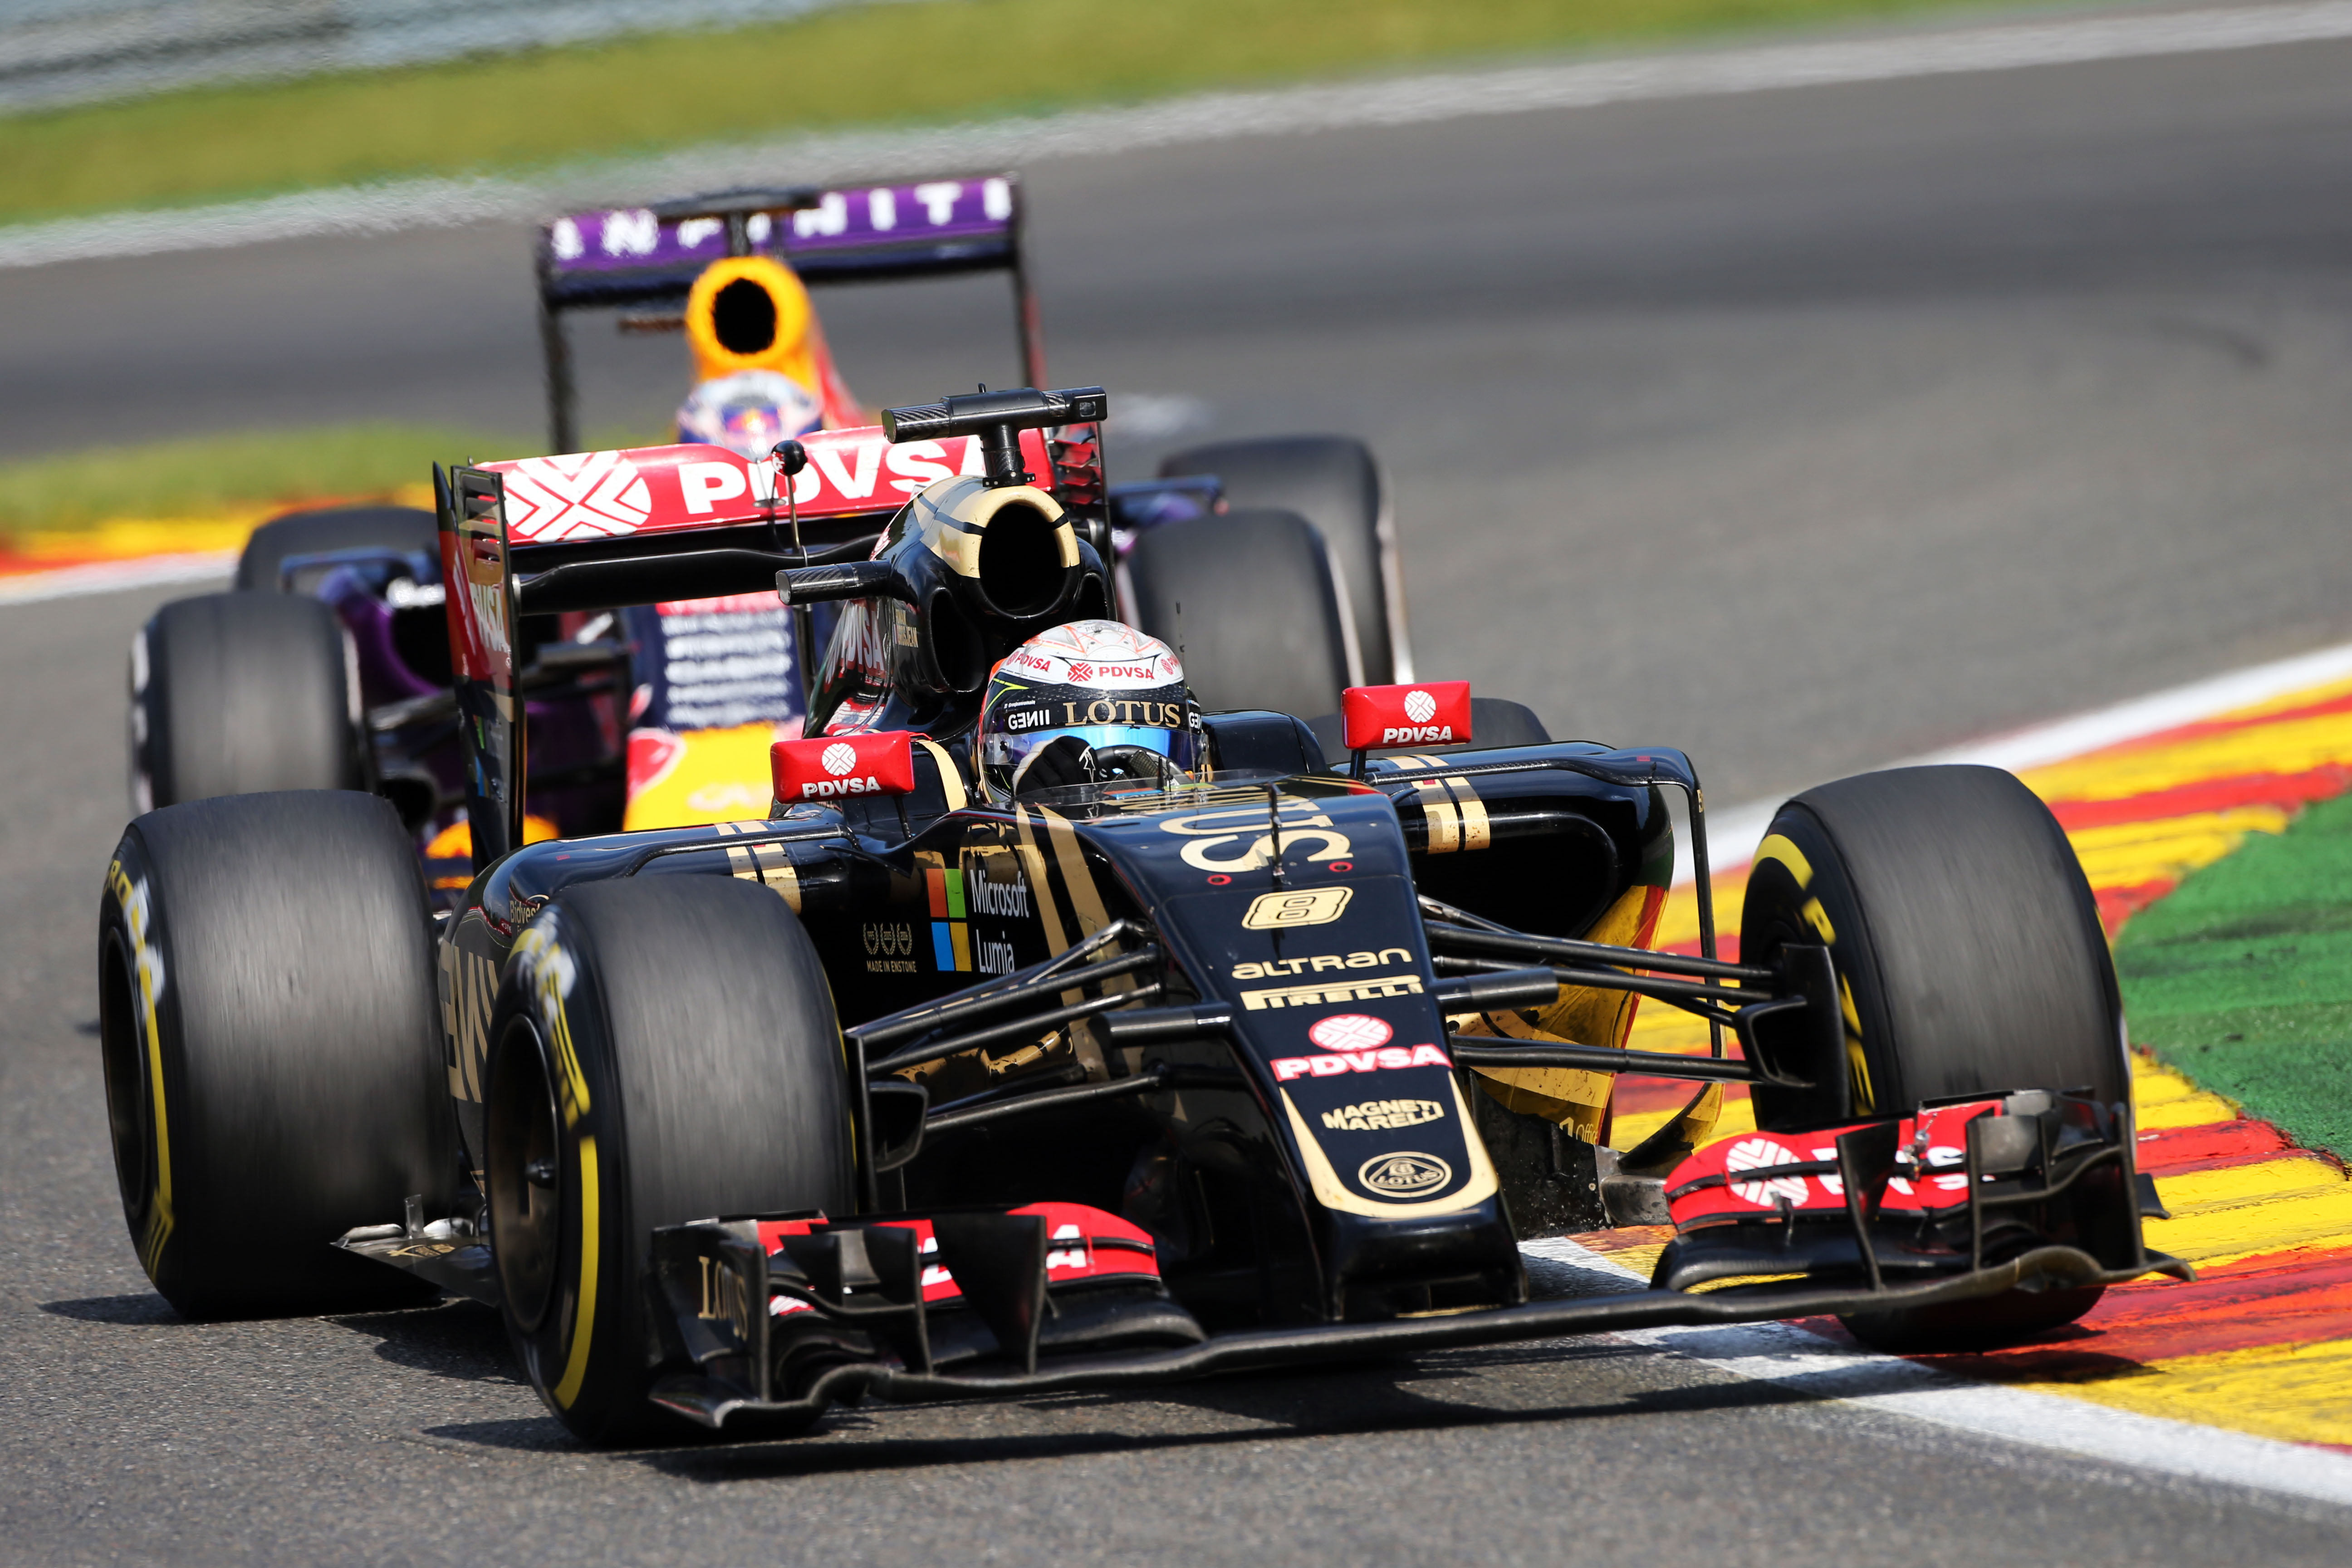 ‘Renault voltooit komende week overname Lotus’